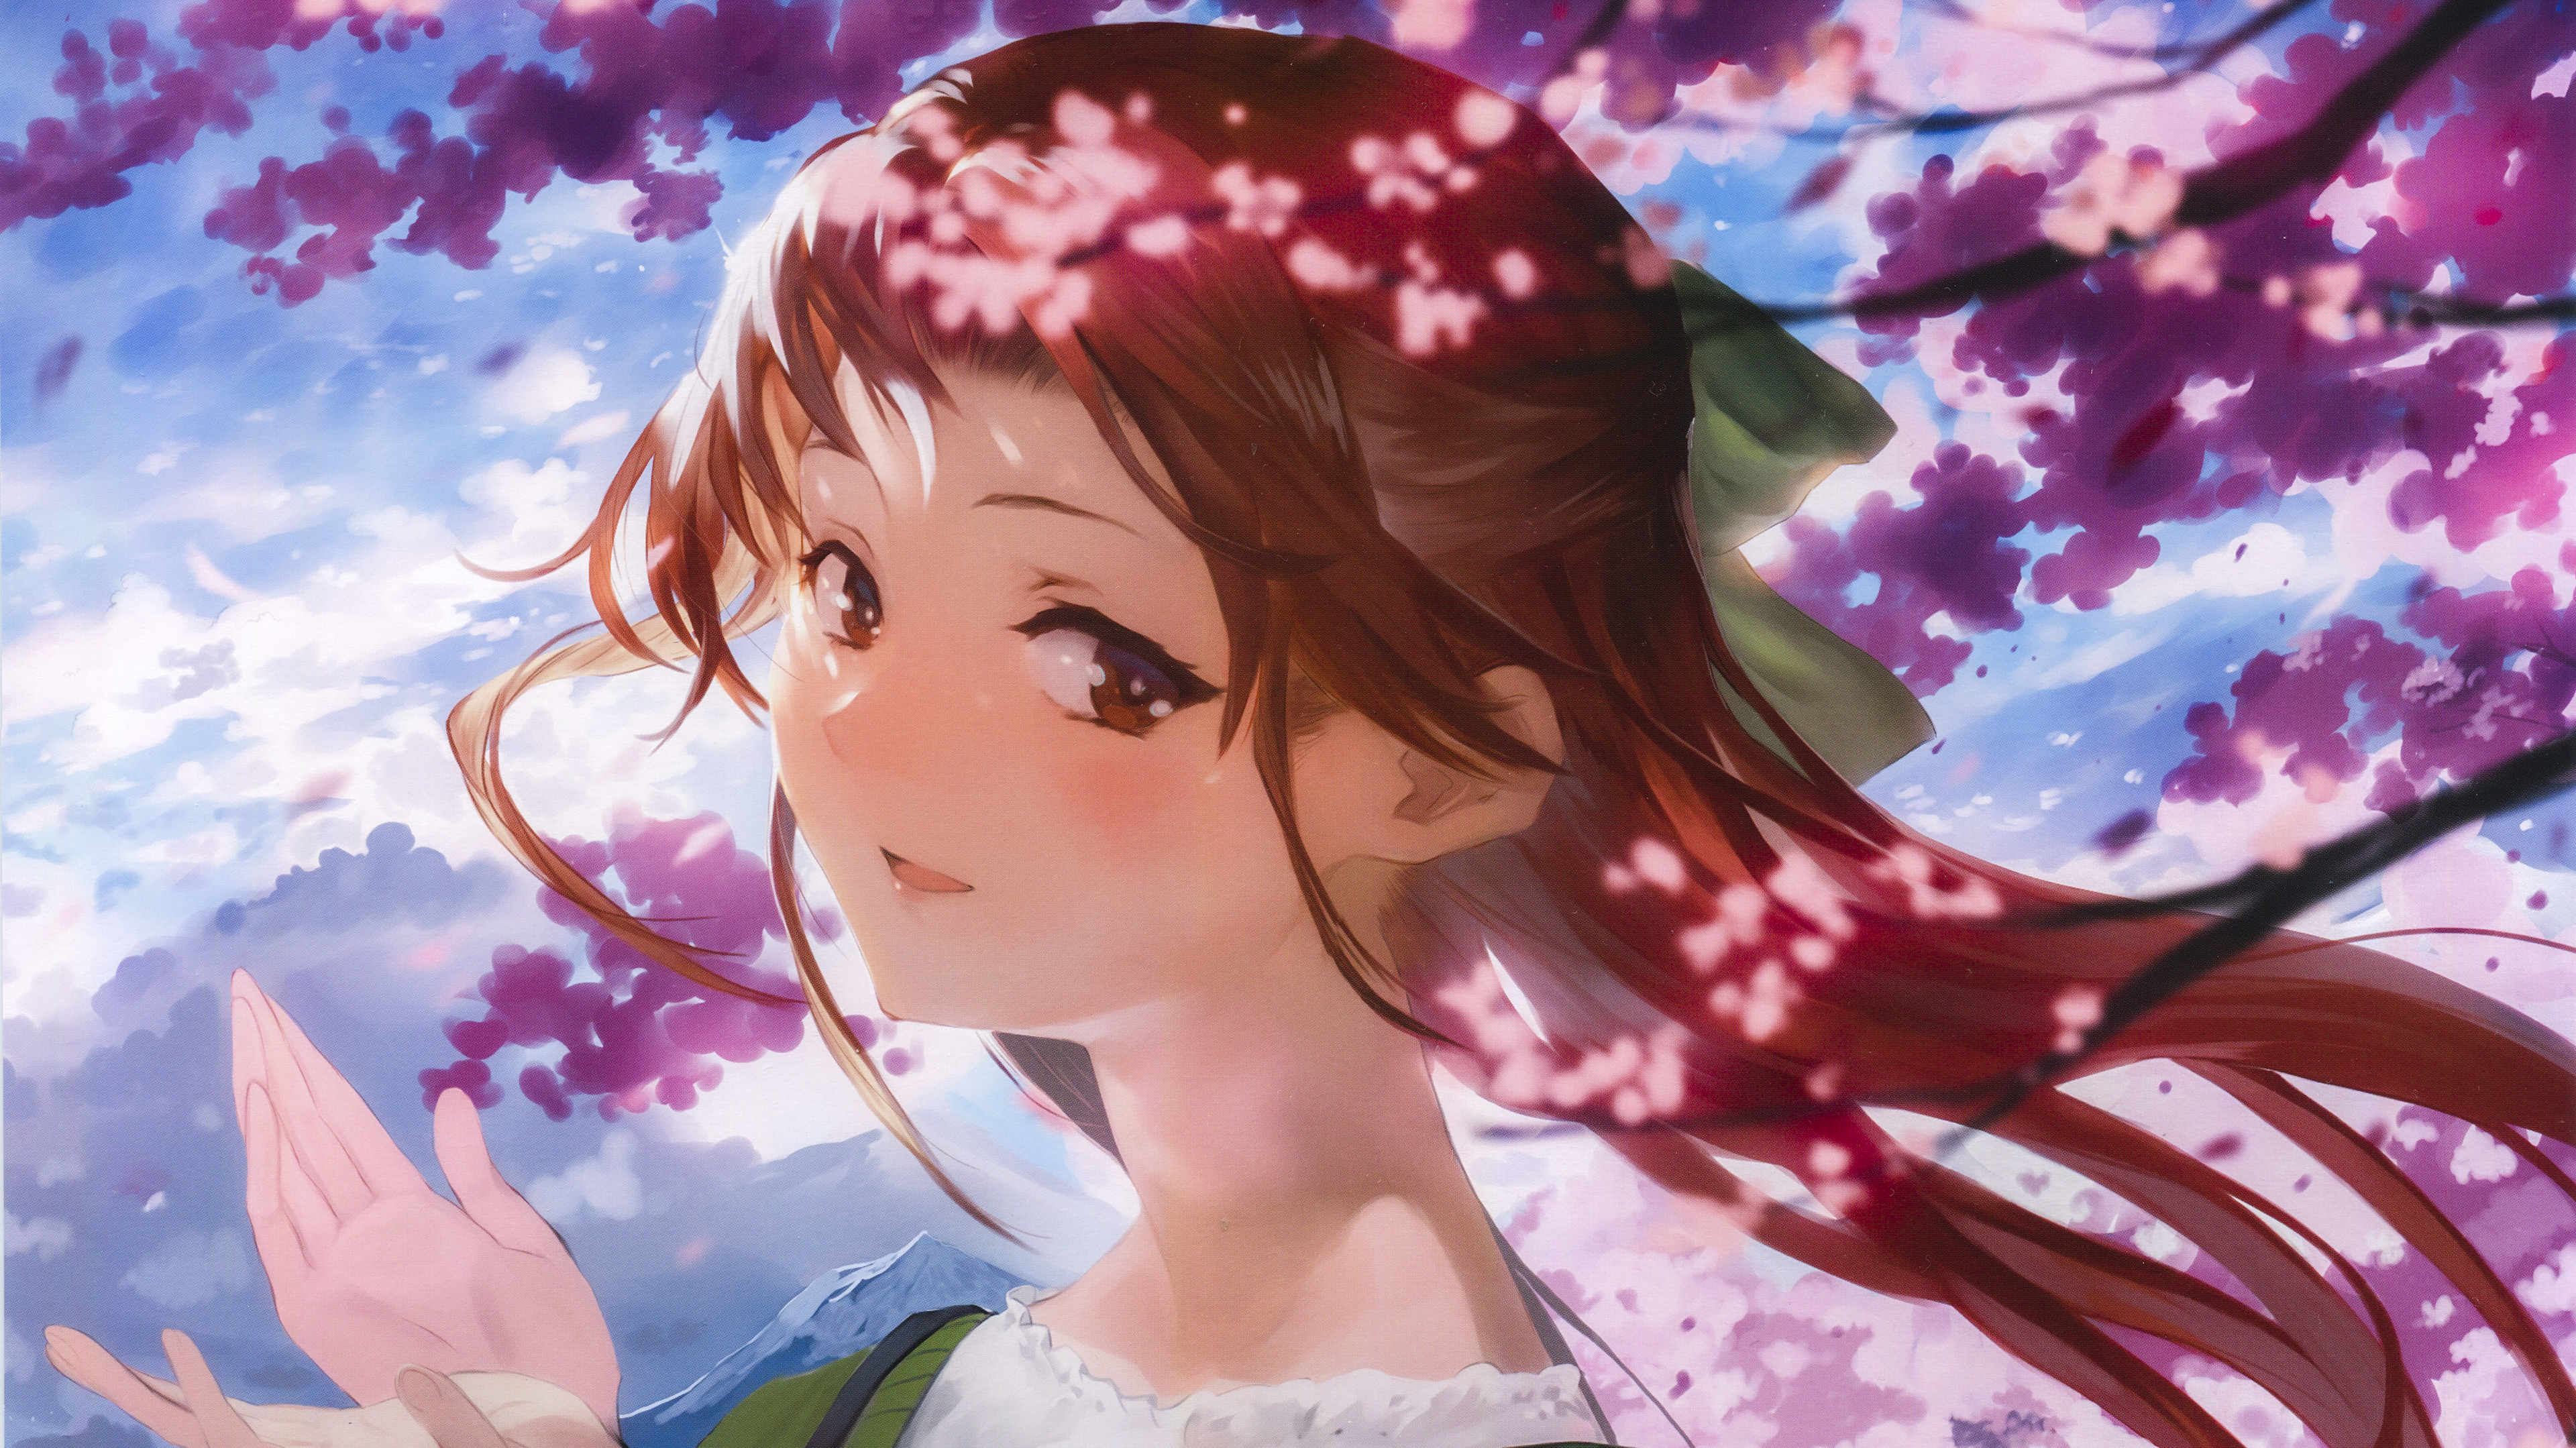 Jintsuu KanColle Looking At Viewer Anime Girls Smiling Blushing Short Hair Brown Eyes Sakura Tree Ka 3840x2159